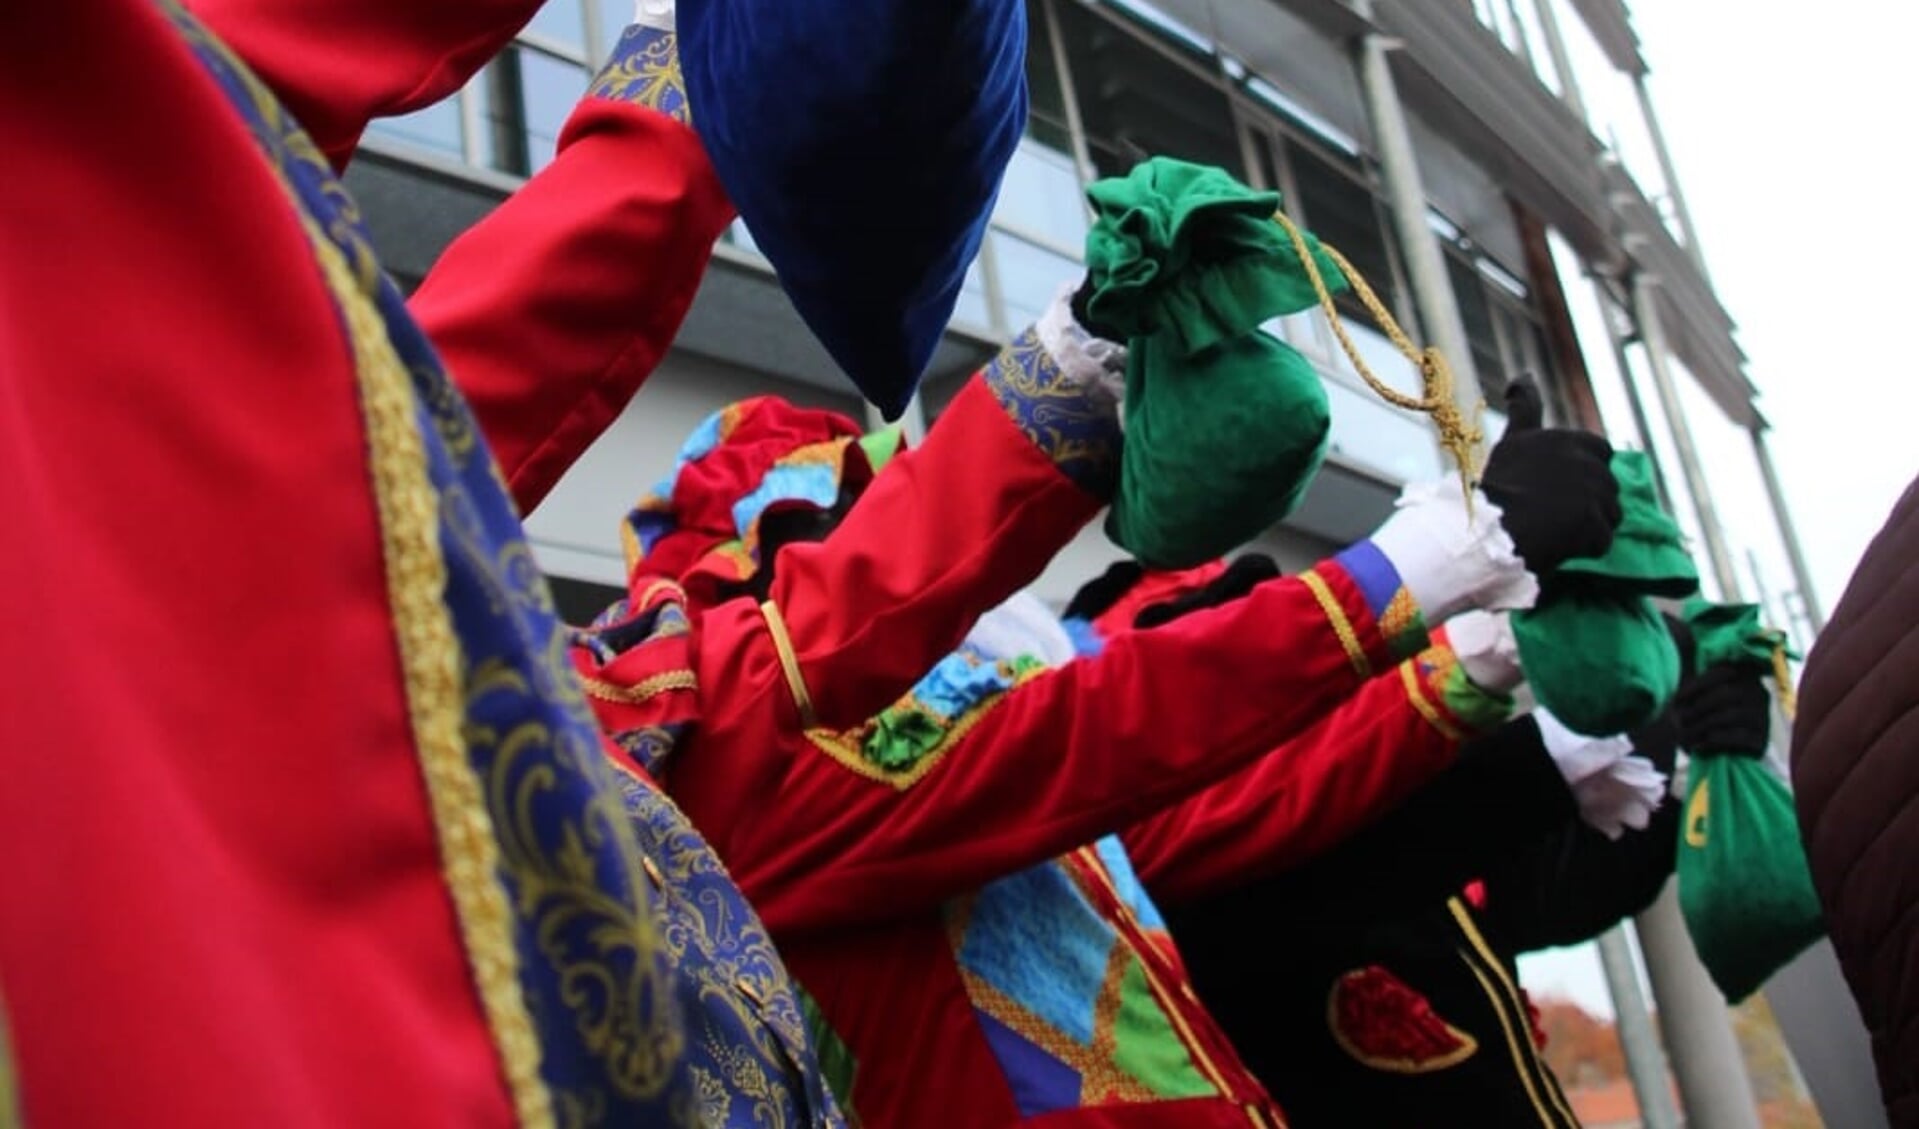 Ook dit jaar zullen de Pieten weer massaal aanwezig zijn tijdens de Boxmeerse koopzondag.